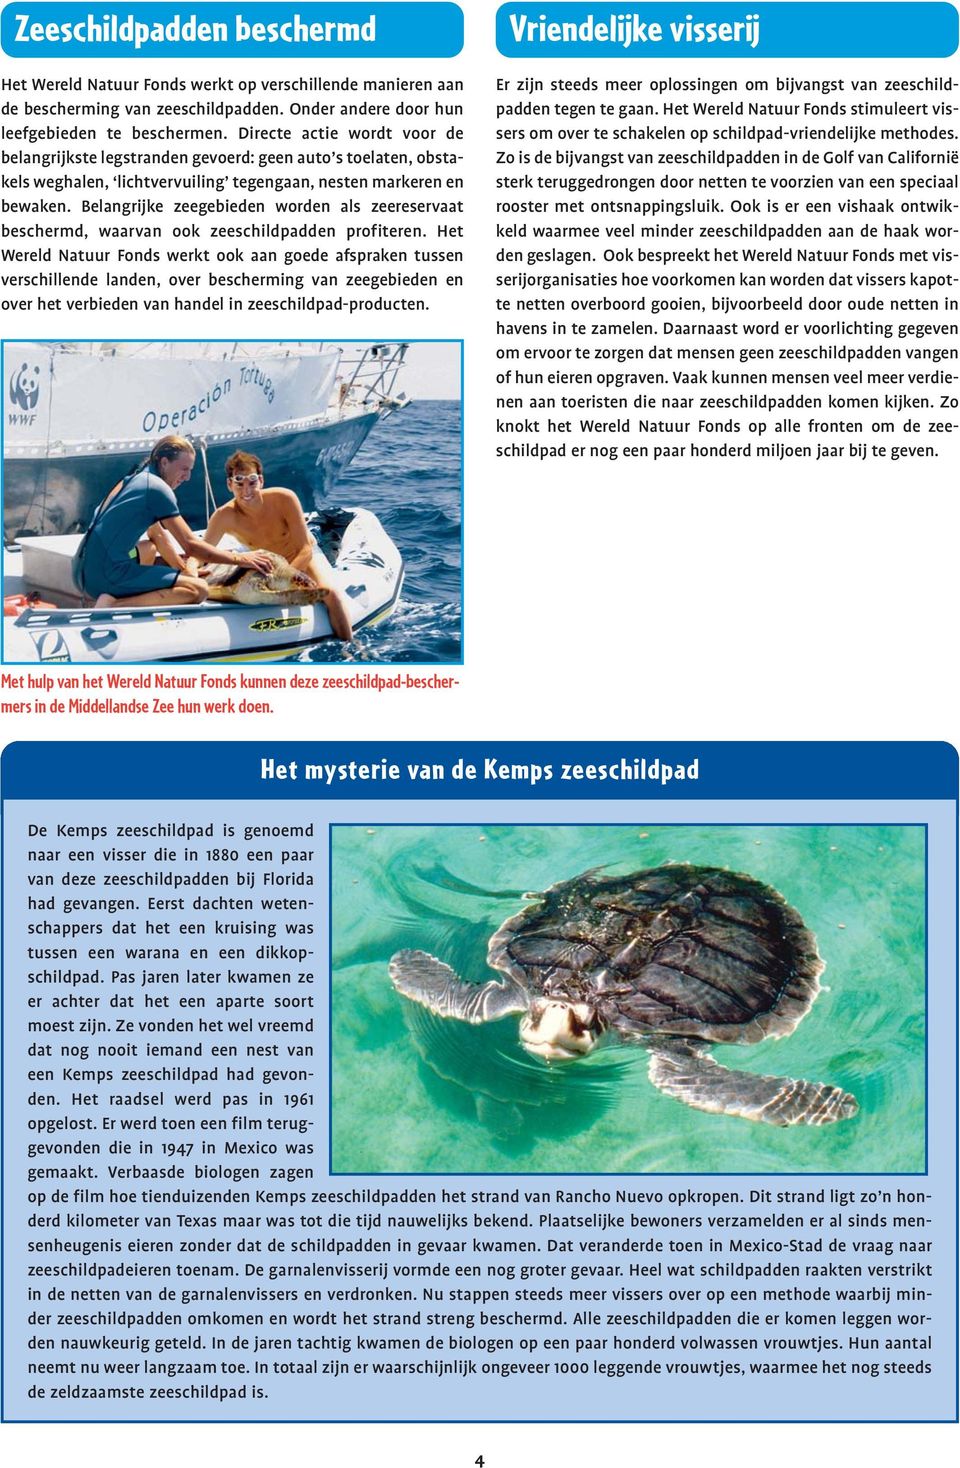 Belangrijke zeegebieden worden als zeereservaat beschermd, waarvan ook zeeschildpadden profiteren.